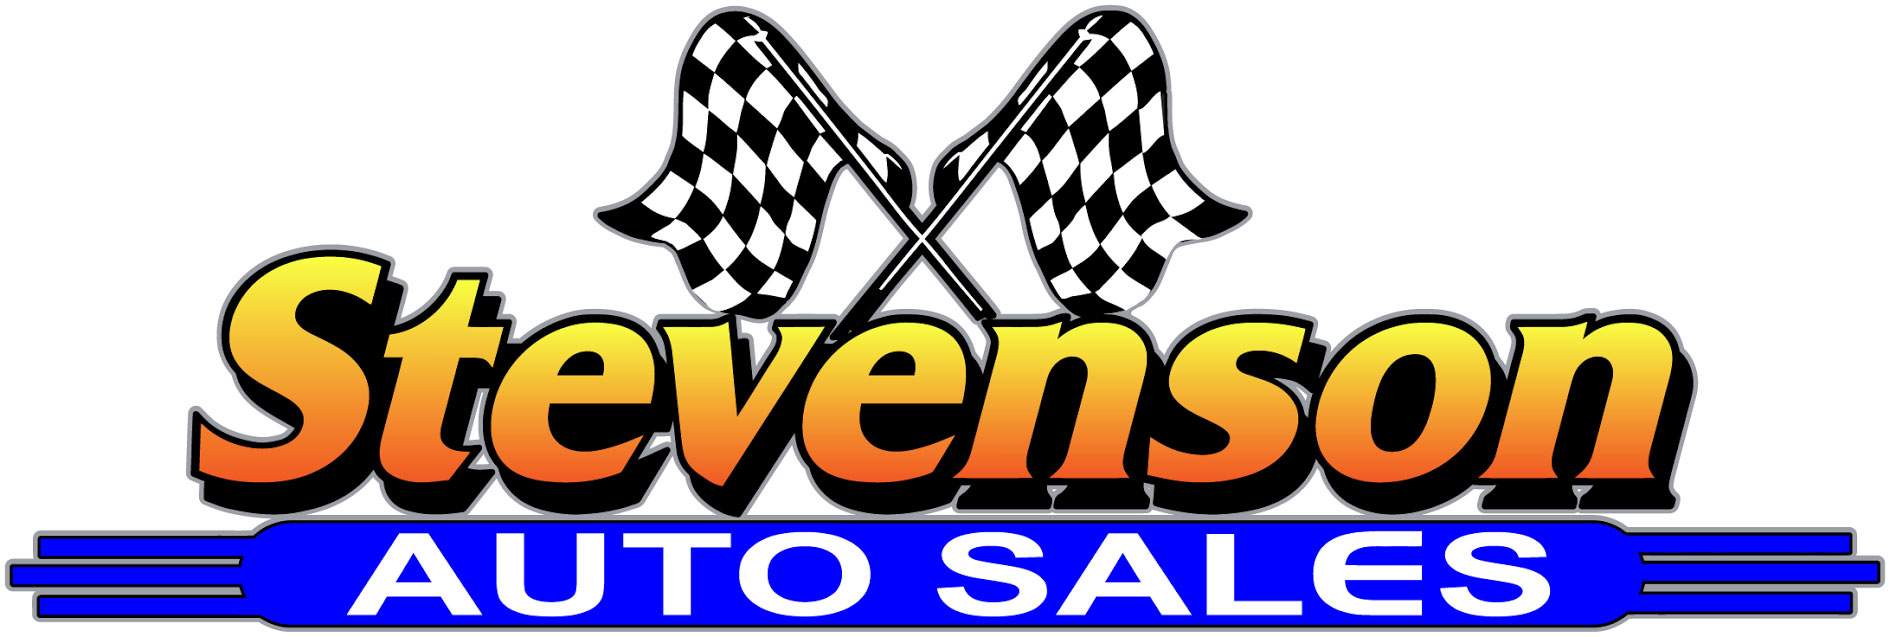 Stevenson Auto Sales_Layer 1